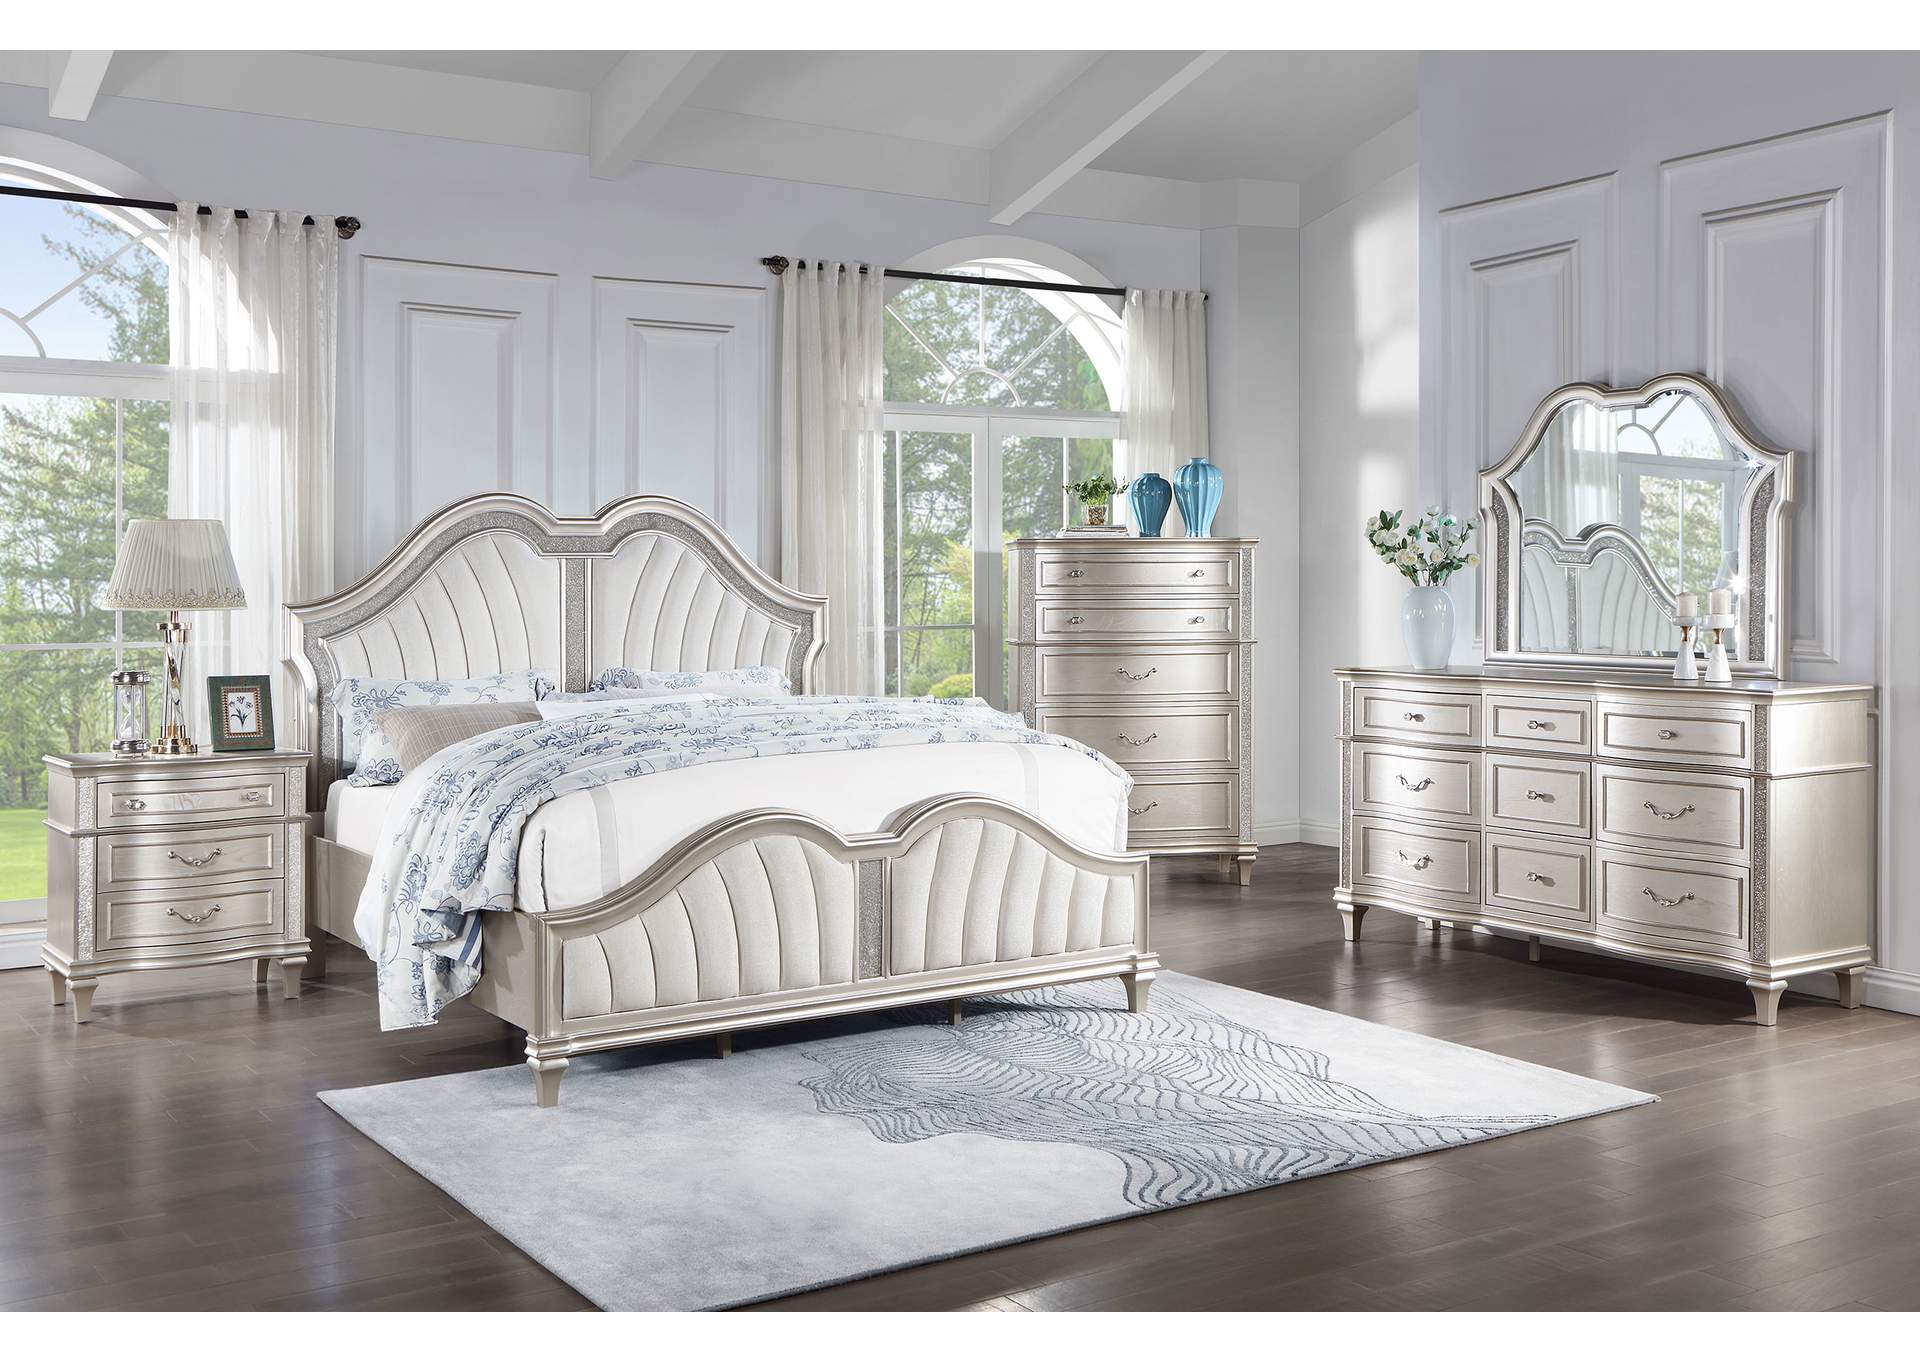 Evangeline Tufted Upholstered Platform Eastern King Bed Ivory and Silver Oak,Coaster Furniture